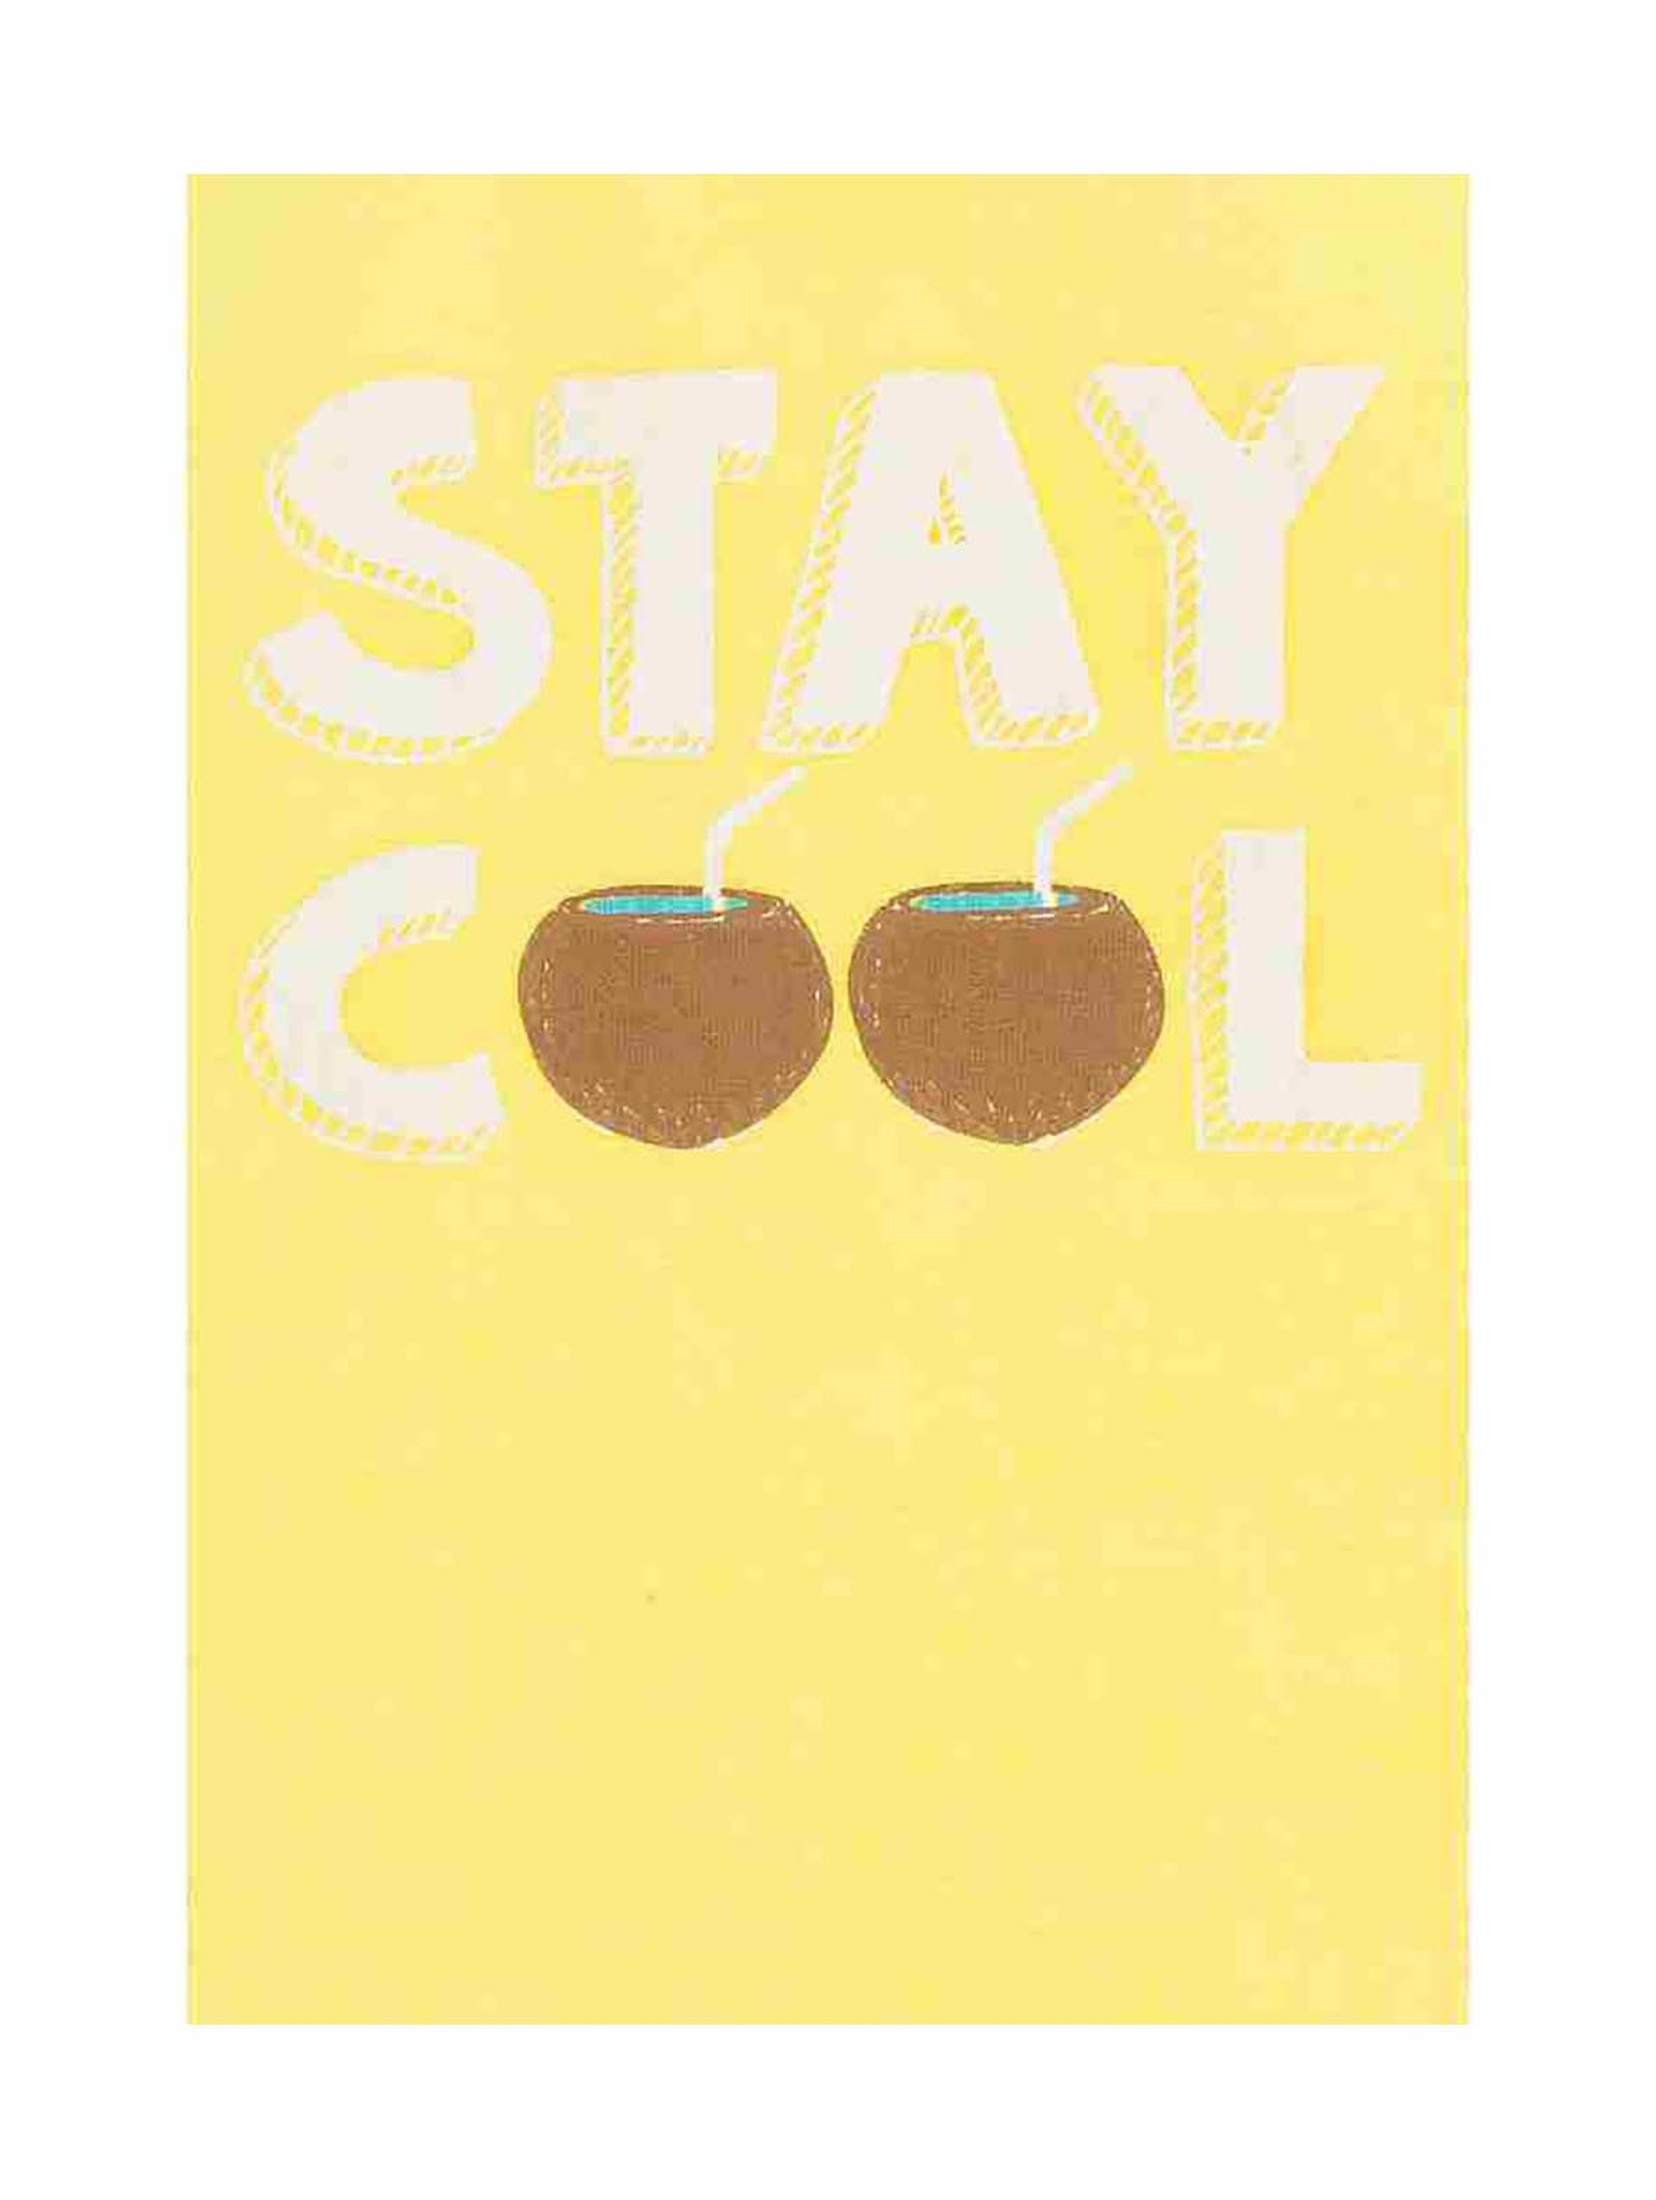 T-shirt bez rękawów Stay Cool - żółty - Lief